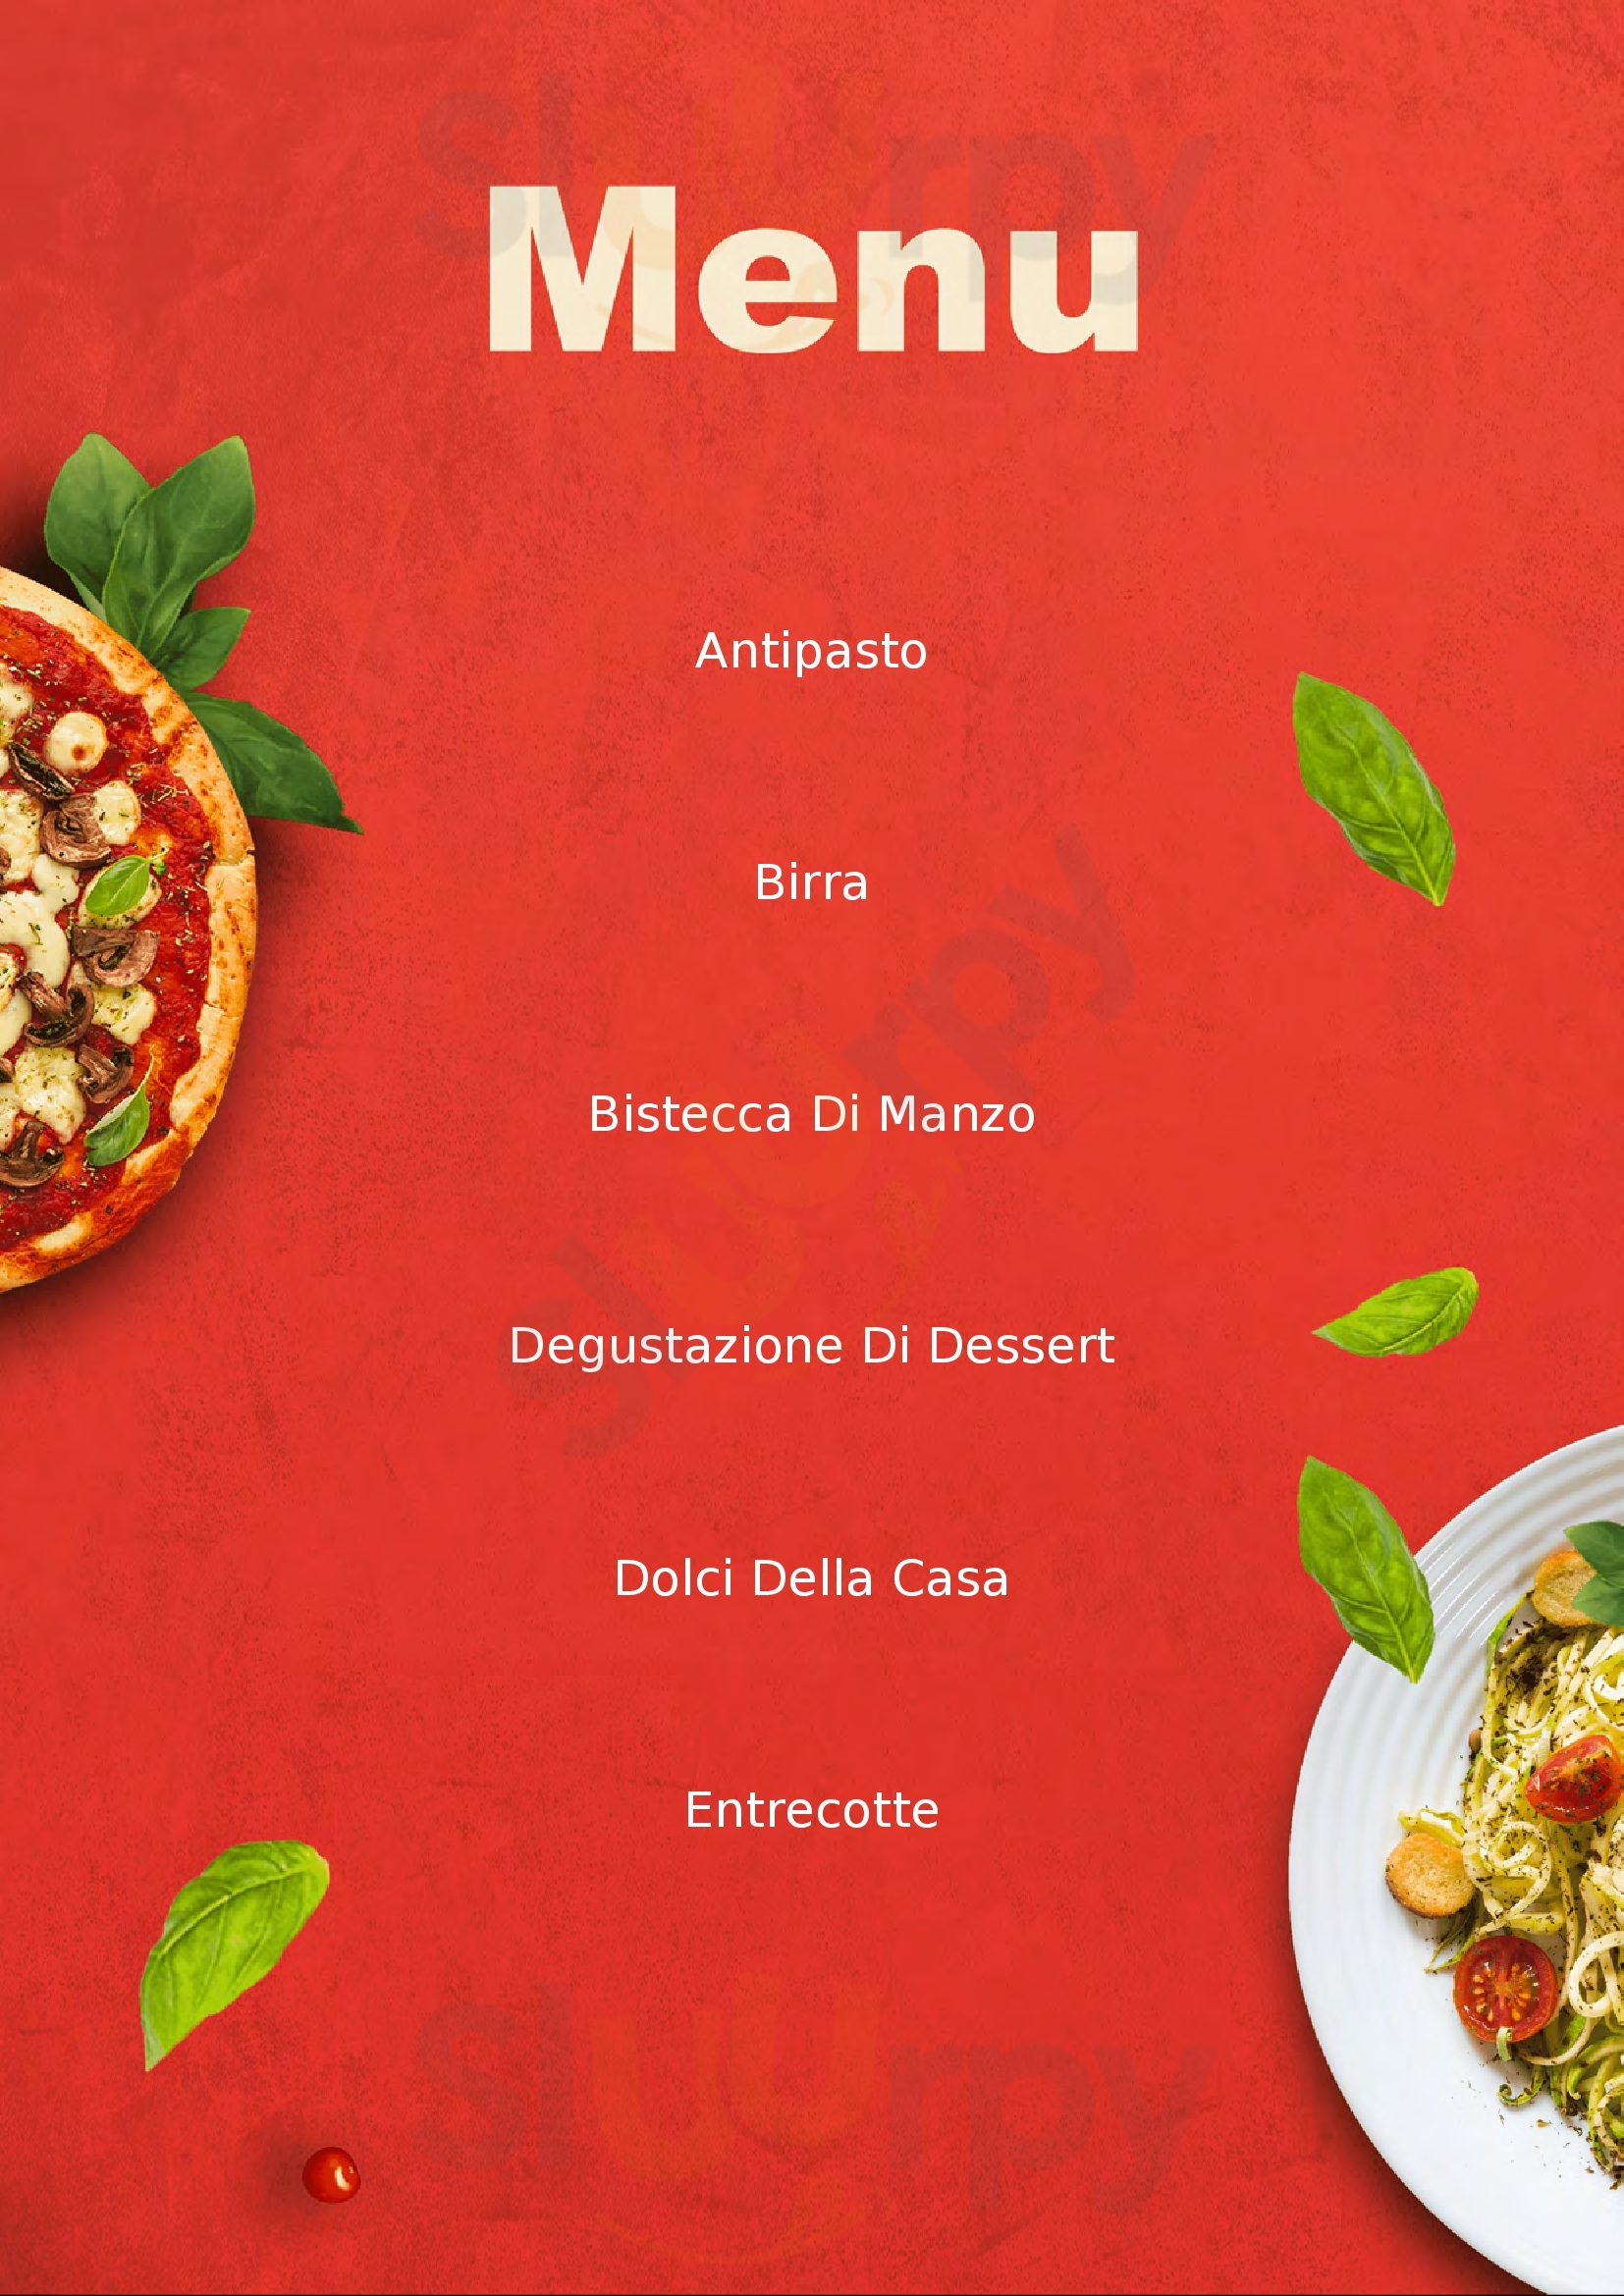 Ago's Pizza Cagliari menù 1 pagina